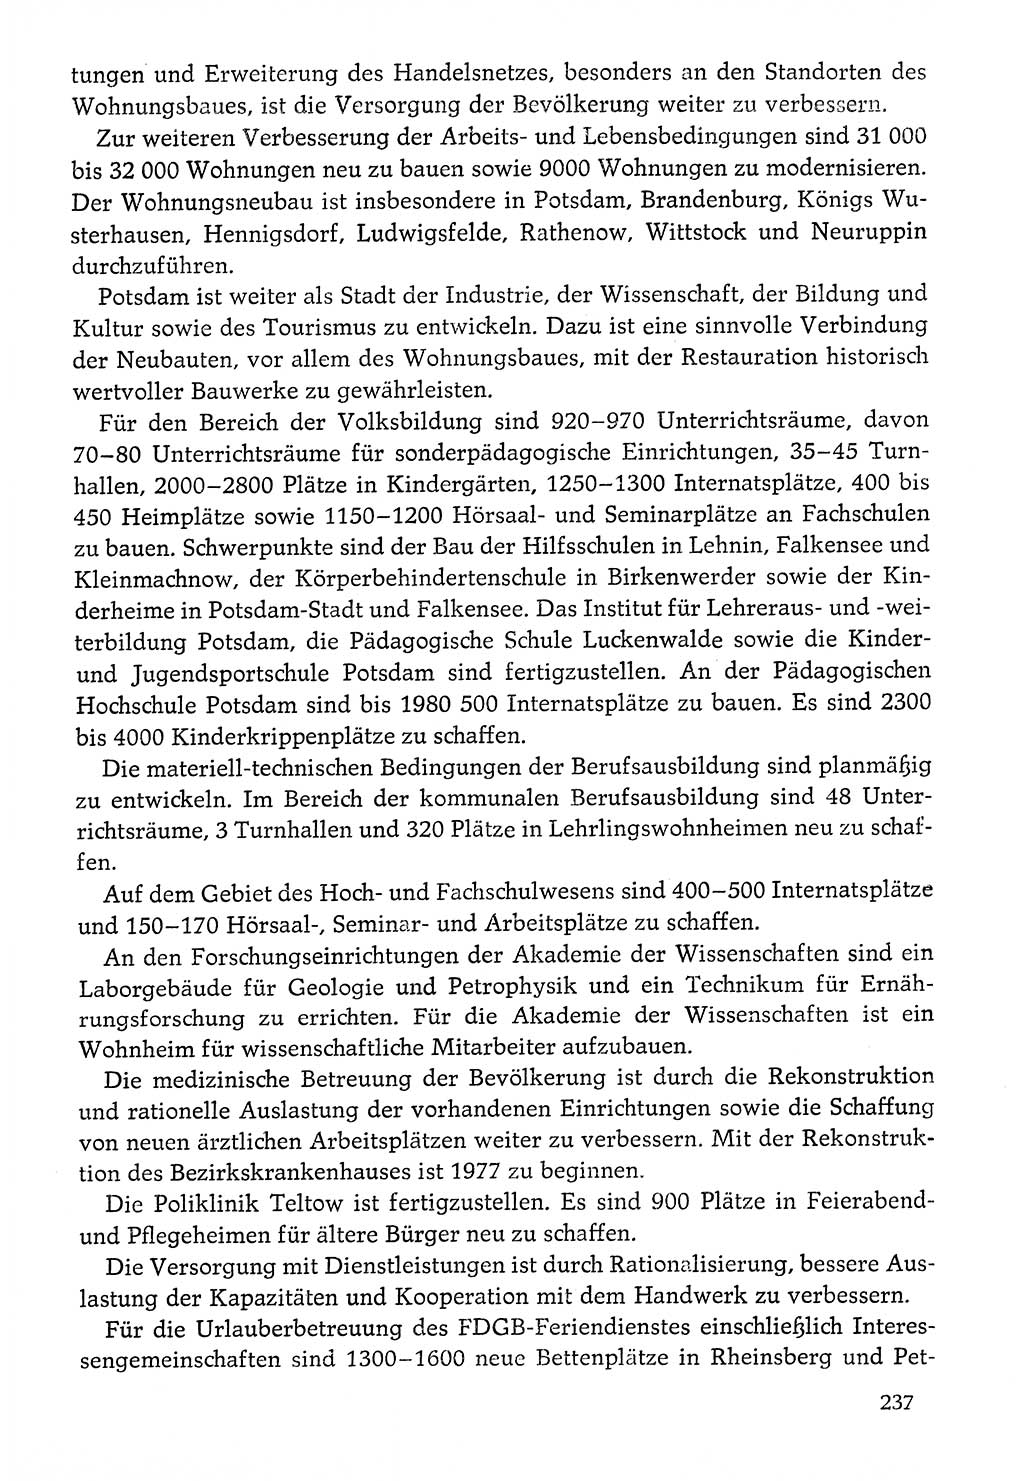 Dokumente der Sozialistischen Einheitspartei Deutschlands (SED) [Deutsche Demokratische Republik (DDR)] 1976-1977, Seite 237 (Dok. SED DDR 1976-1977, S. 237)